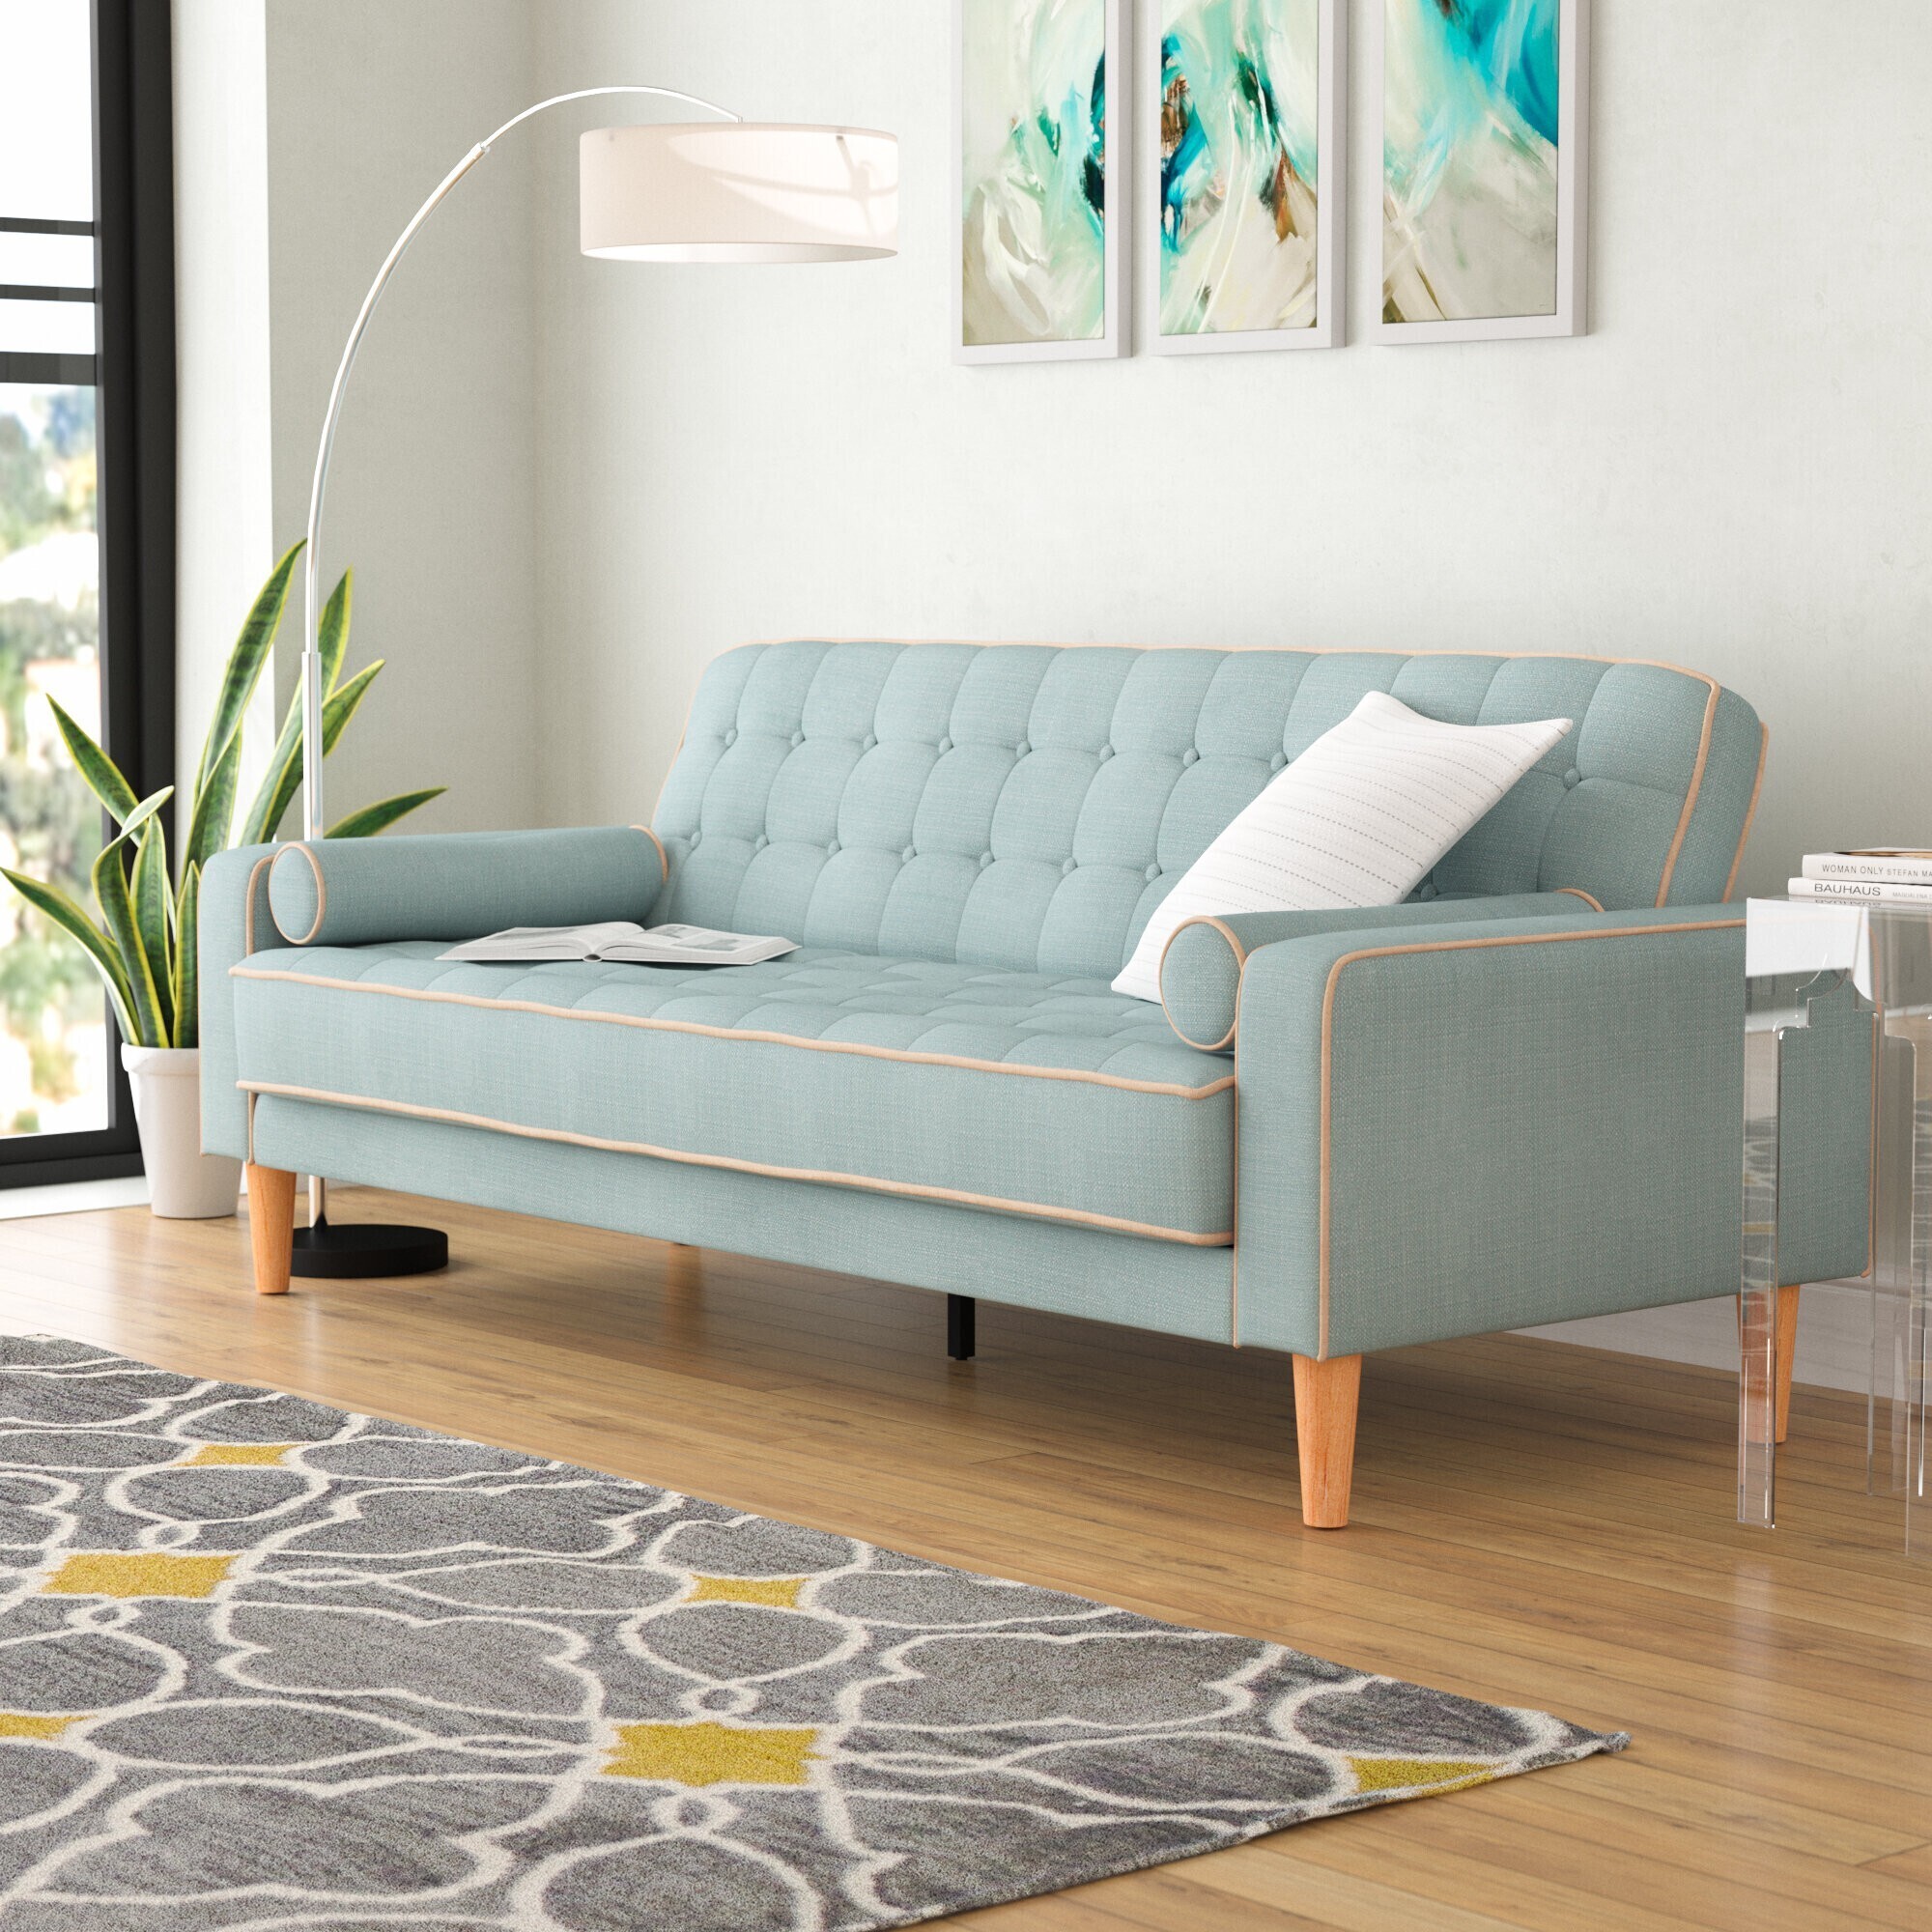 Stylish and Comfortable Sofa